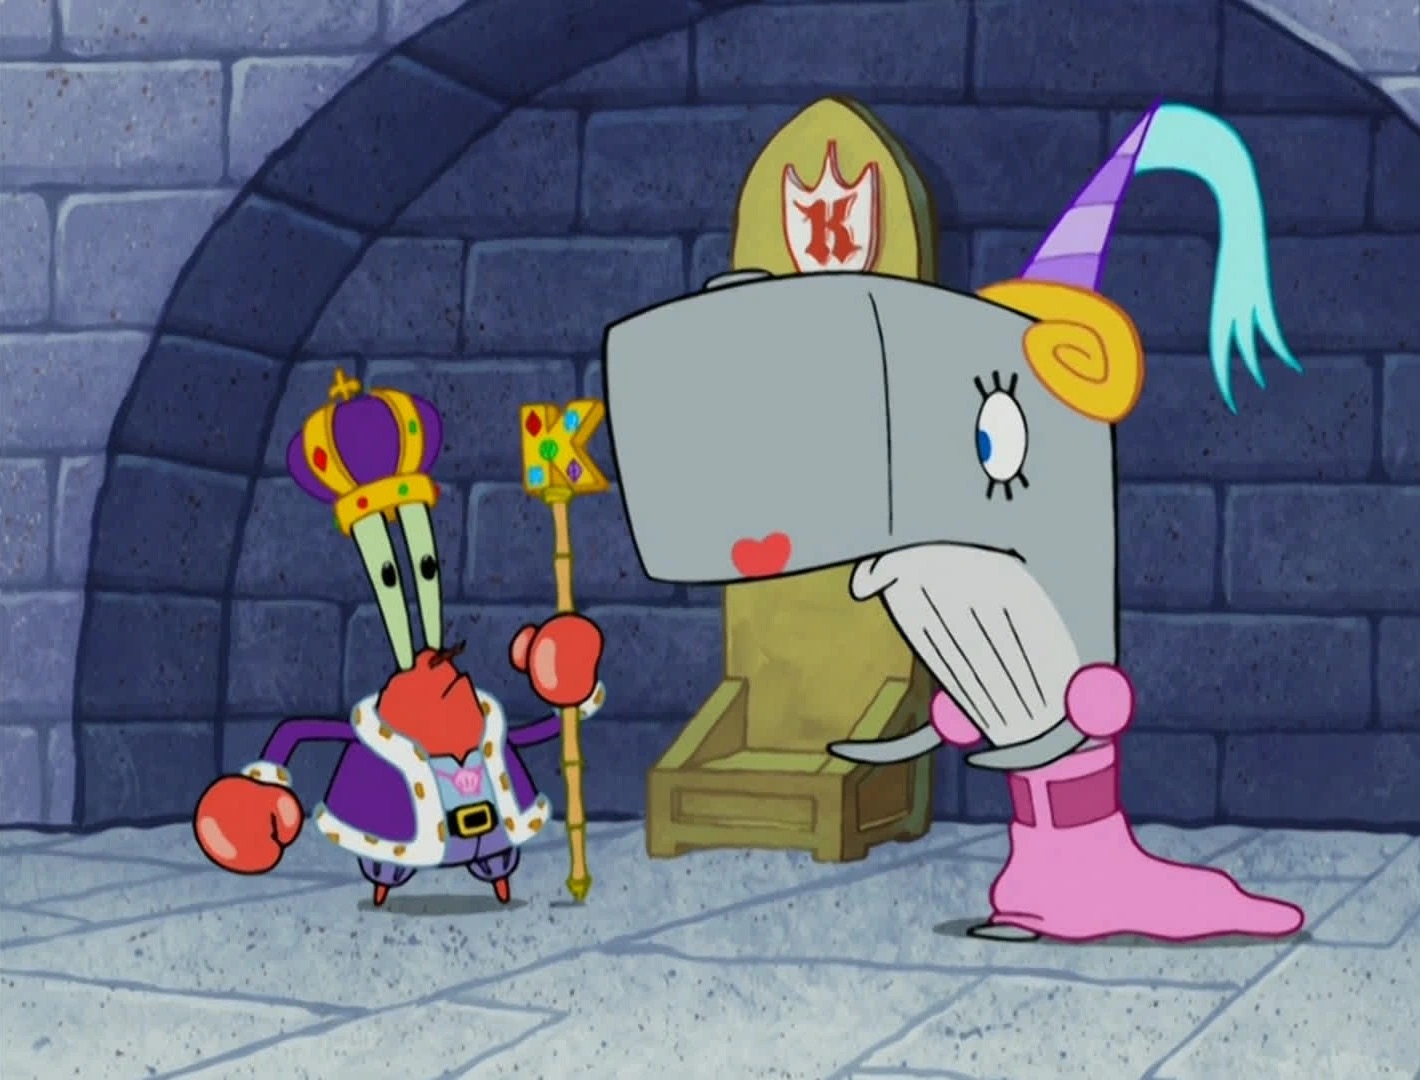 Pearl Krabs and Mr. Krabs from SpongeBob SquarePants